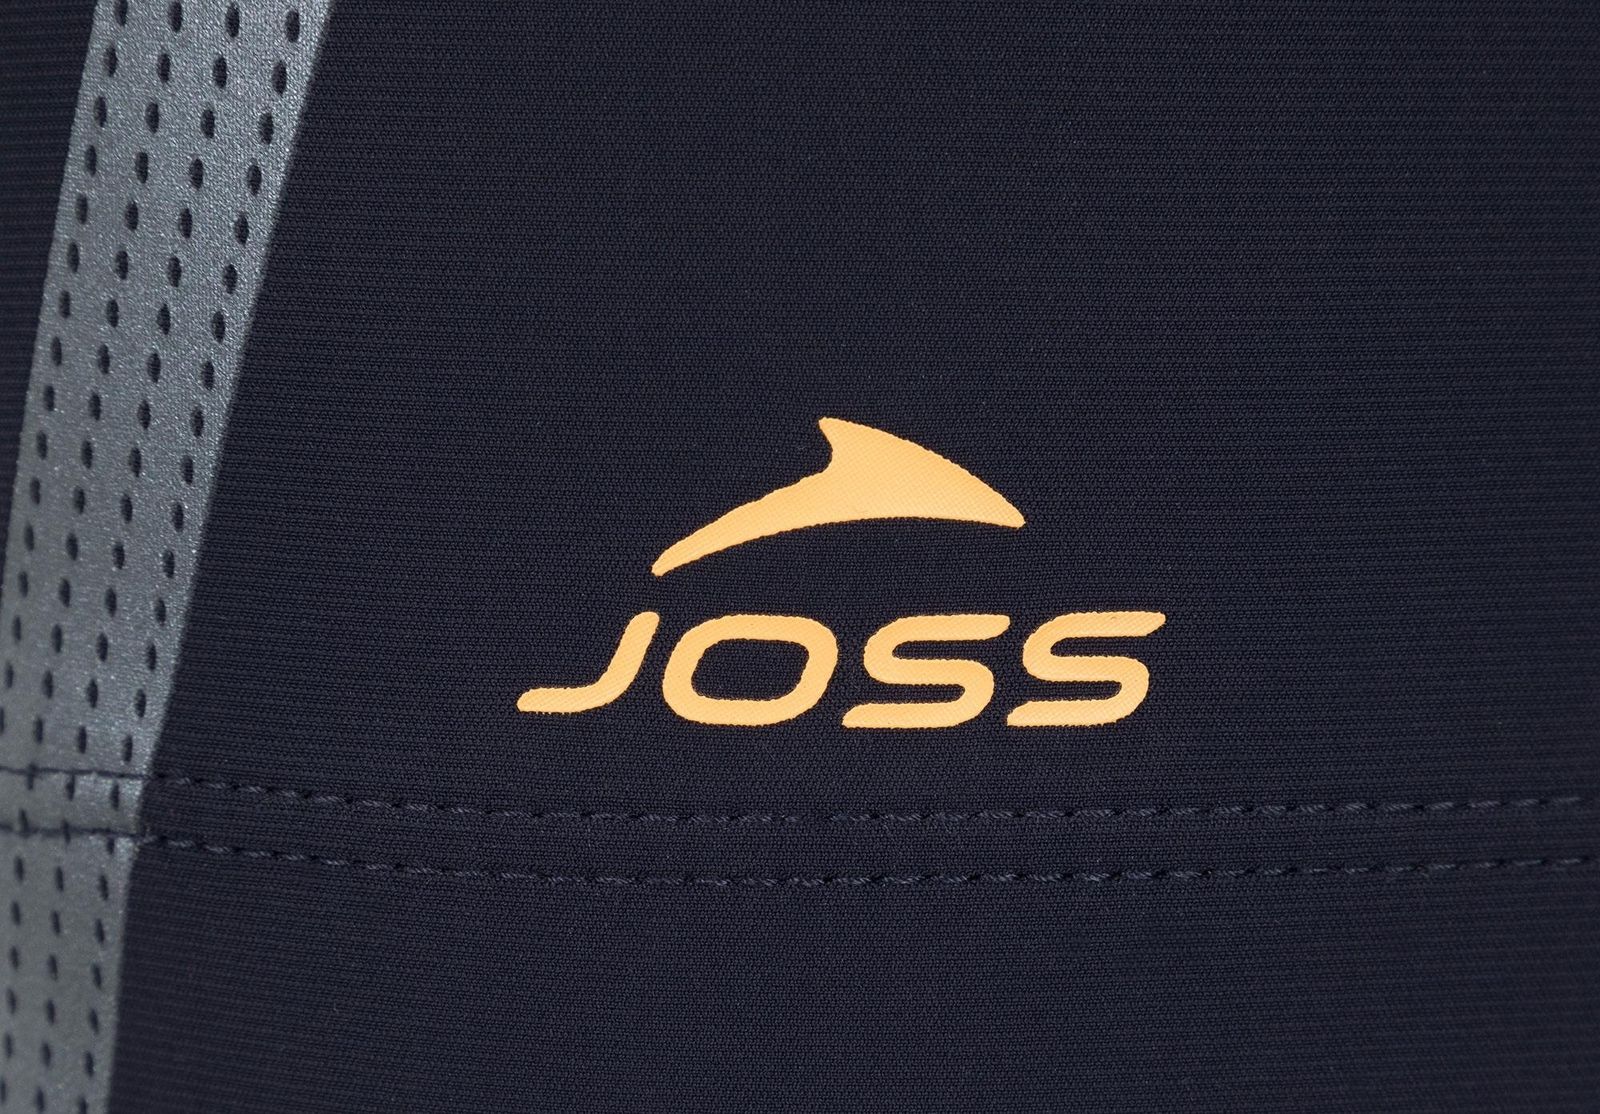   Joss Men's Swim Trunks, : -. S19AJSWTM06-Z4.  54